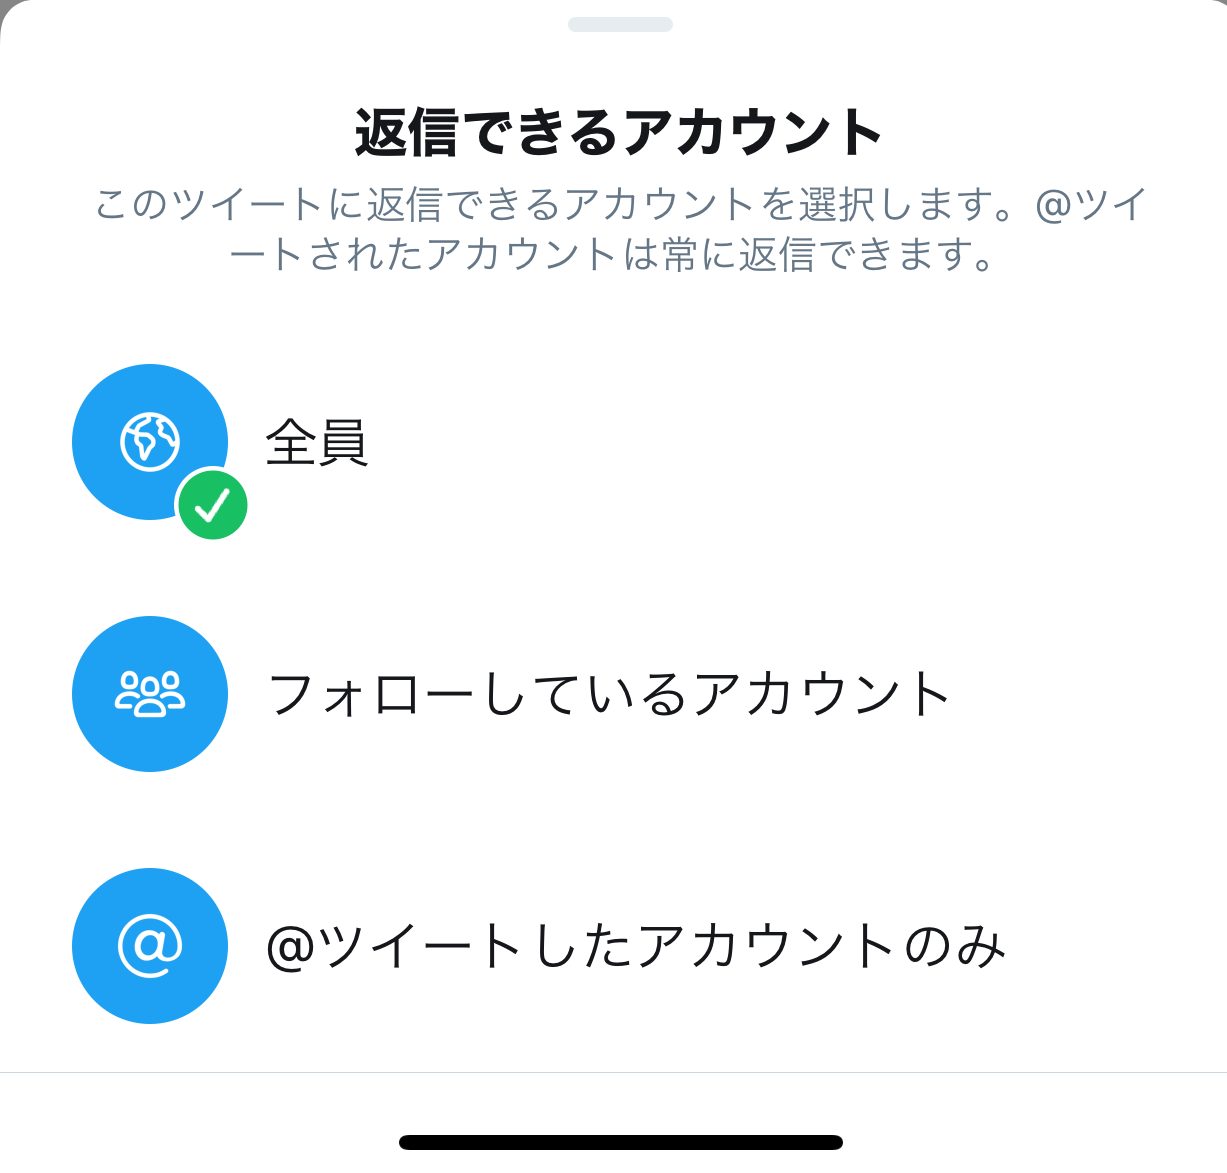 Twitter ツイートに返信者制限機能を追加 クソリプ Ff外 を禁止可能に Engadget 日本版